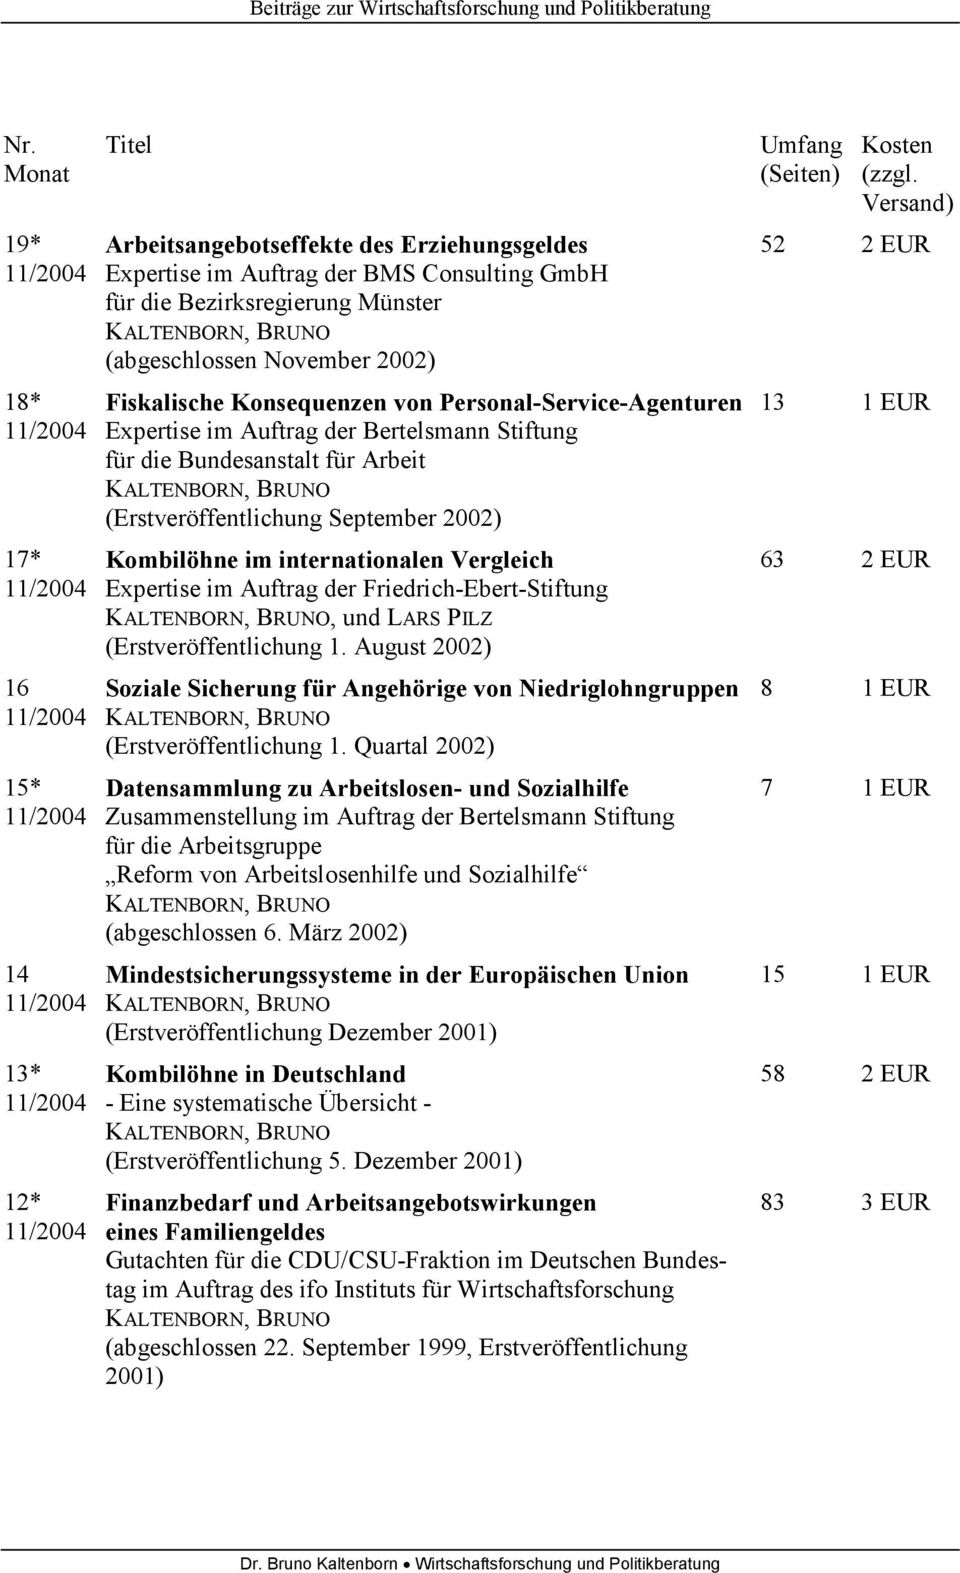 Vergleich Expertise im Auftrag der Friedrich-Ebert-Stiftung, und LARS PILZ (Erstveröffentlichung 1. August 2002) Soziale Sicherung für Angehörige von Niedriglohngruppen (Erstveröffentlichung 1.